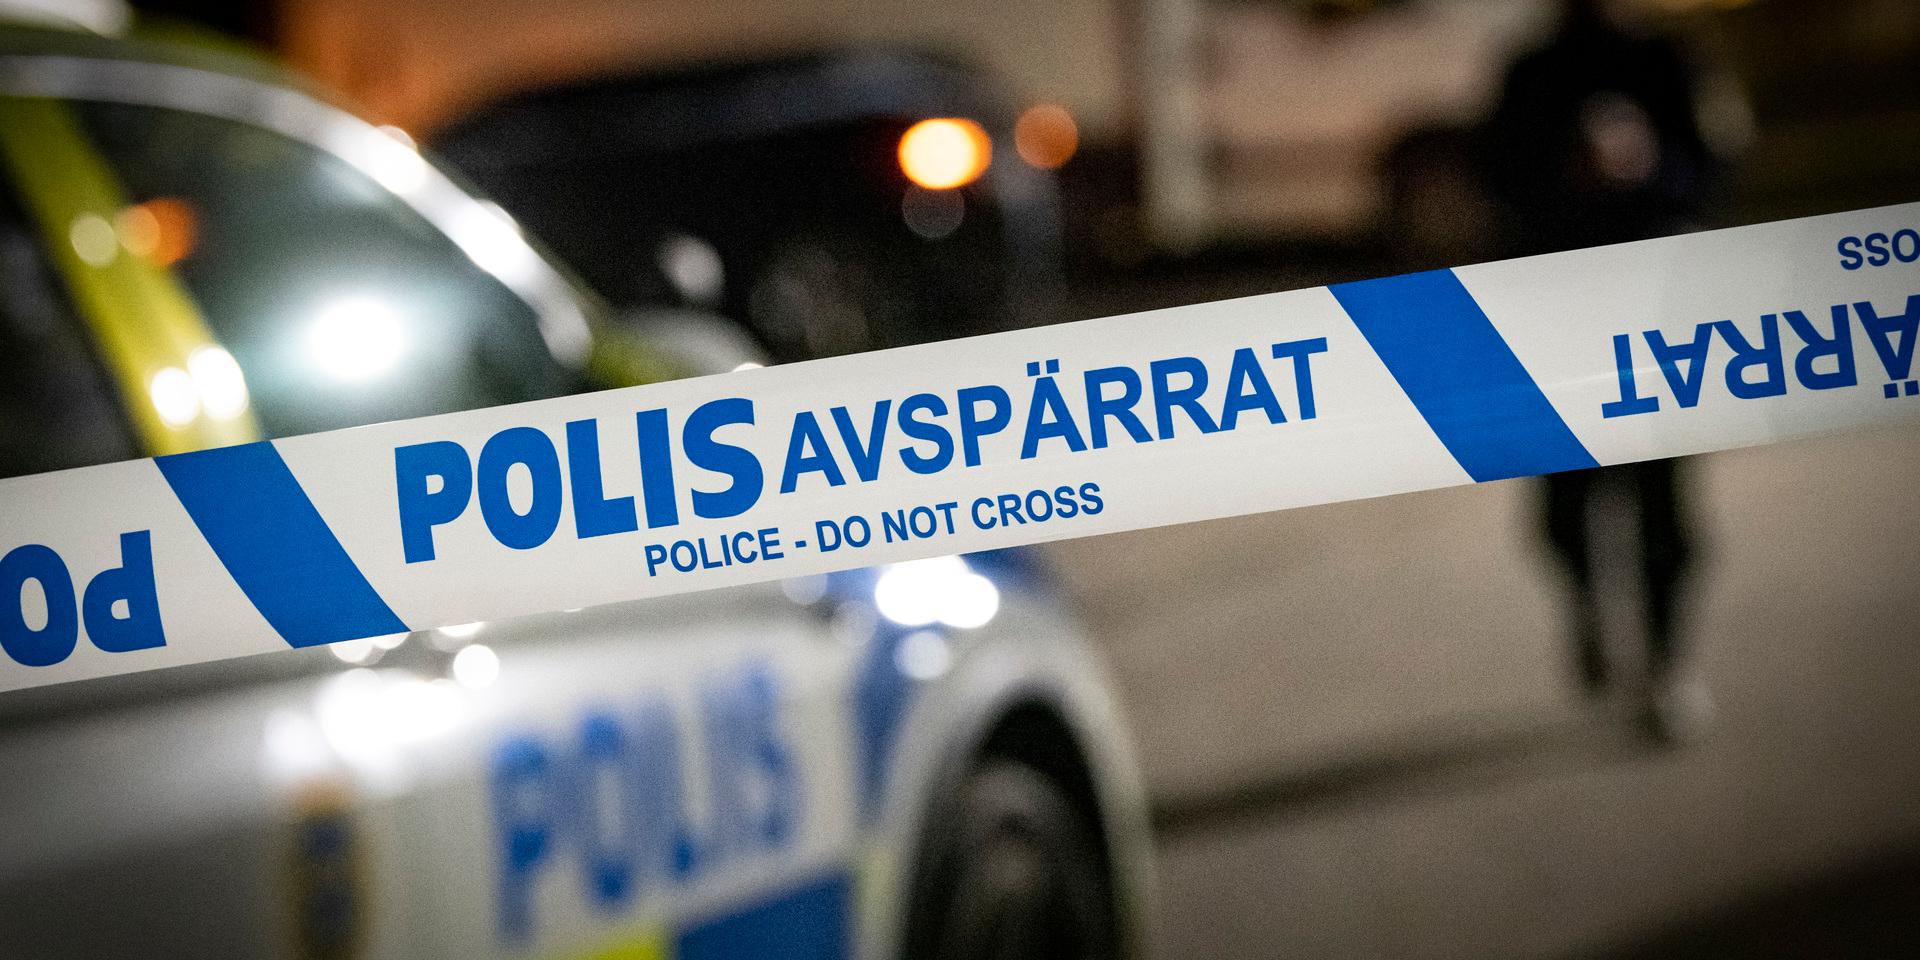 ”Utländska stöldligor står för en stor andel av brottsligheten i Sverige – upp till omkring 90 procent av stölderna av bilar, bildelar, båtmotorer och jordbruksmaskiner.”